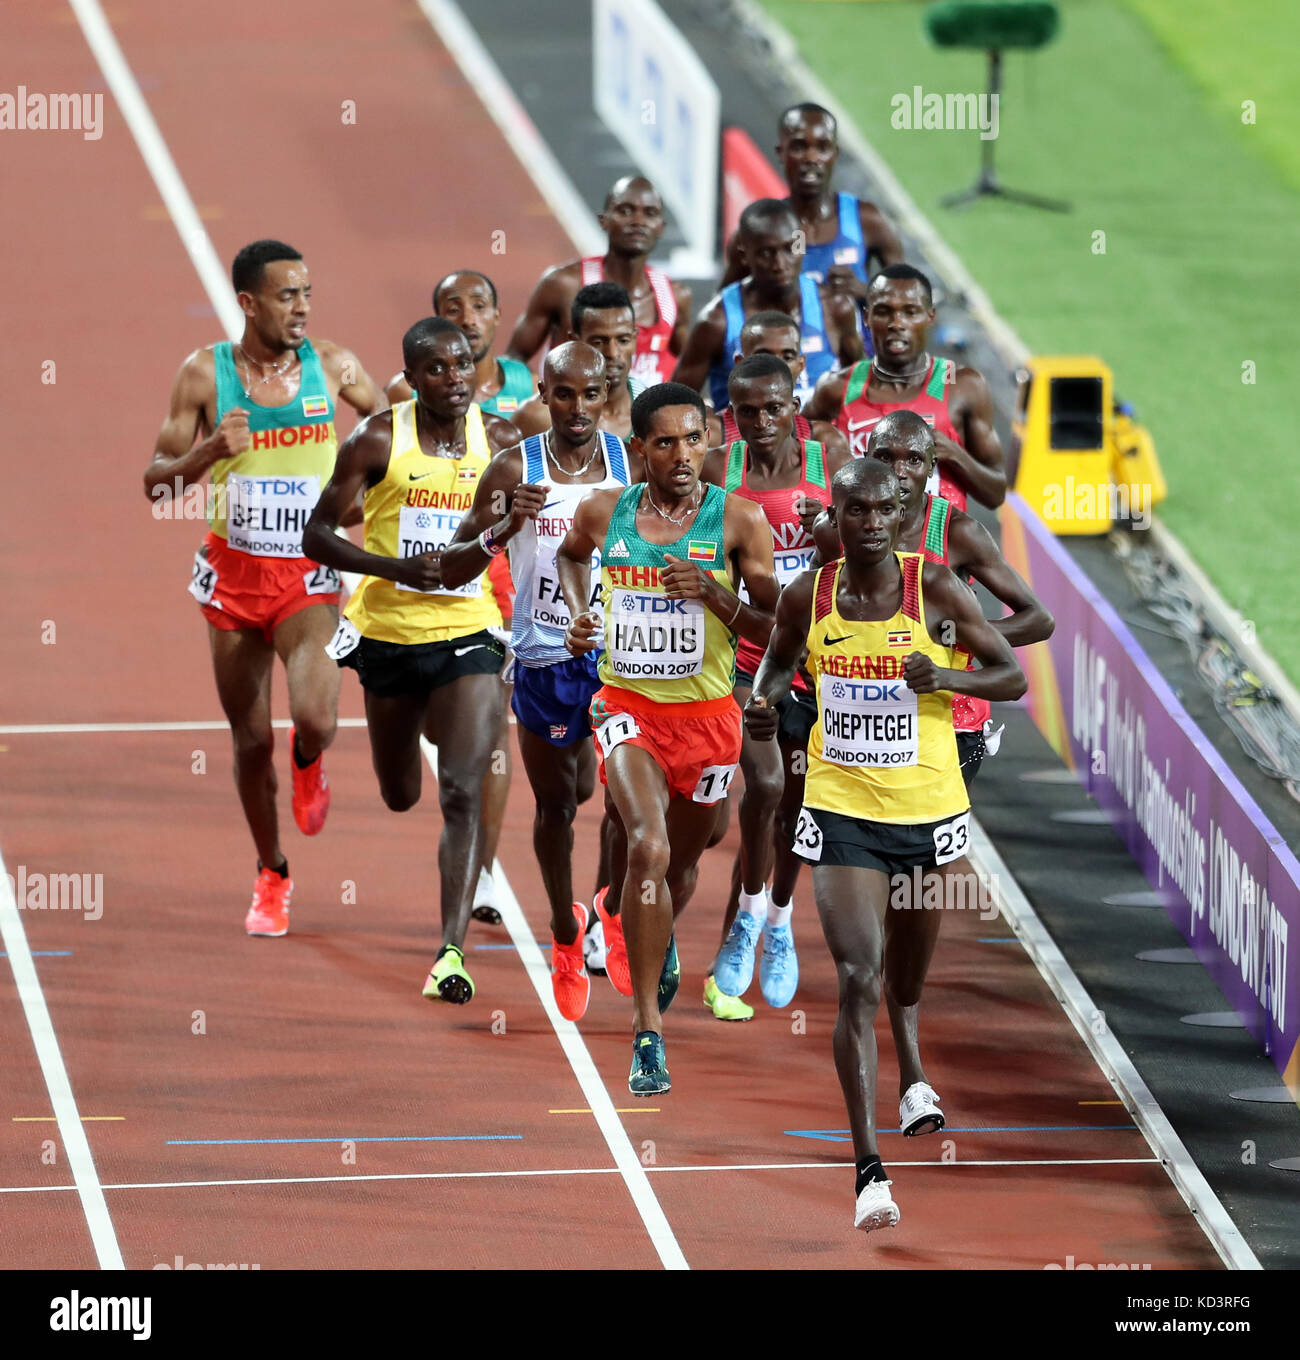 Abadi HADIS (Ethiopie), Mo Farah (Grande-Bretagne), Joshua Kiprui CHEPTEGEI (Ouganda) en compétition dans l'épreuve du 10000m à la finale 2017, championnats du monde IAAF, Queen Elizabeth Olympic Park, Stratford, London, UK. Banque D'Images